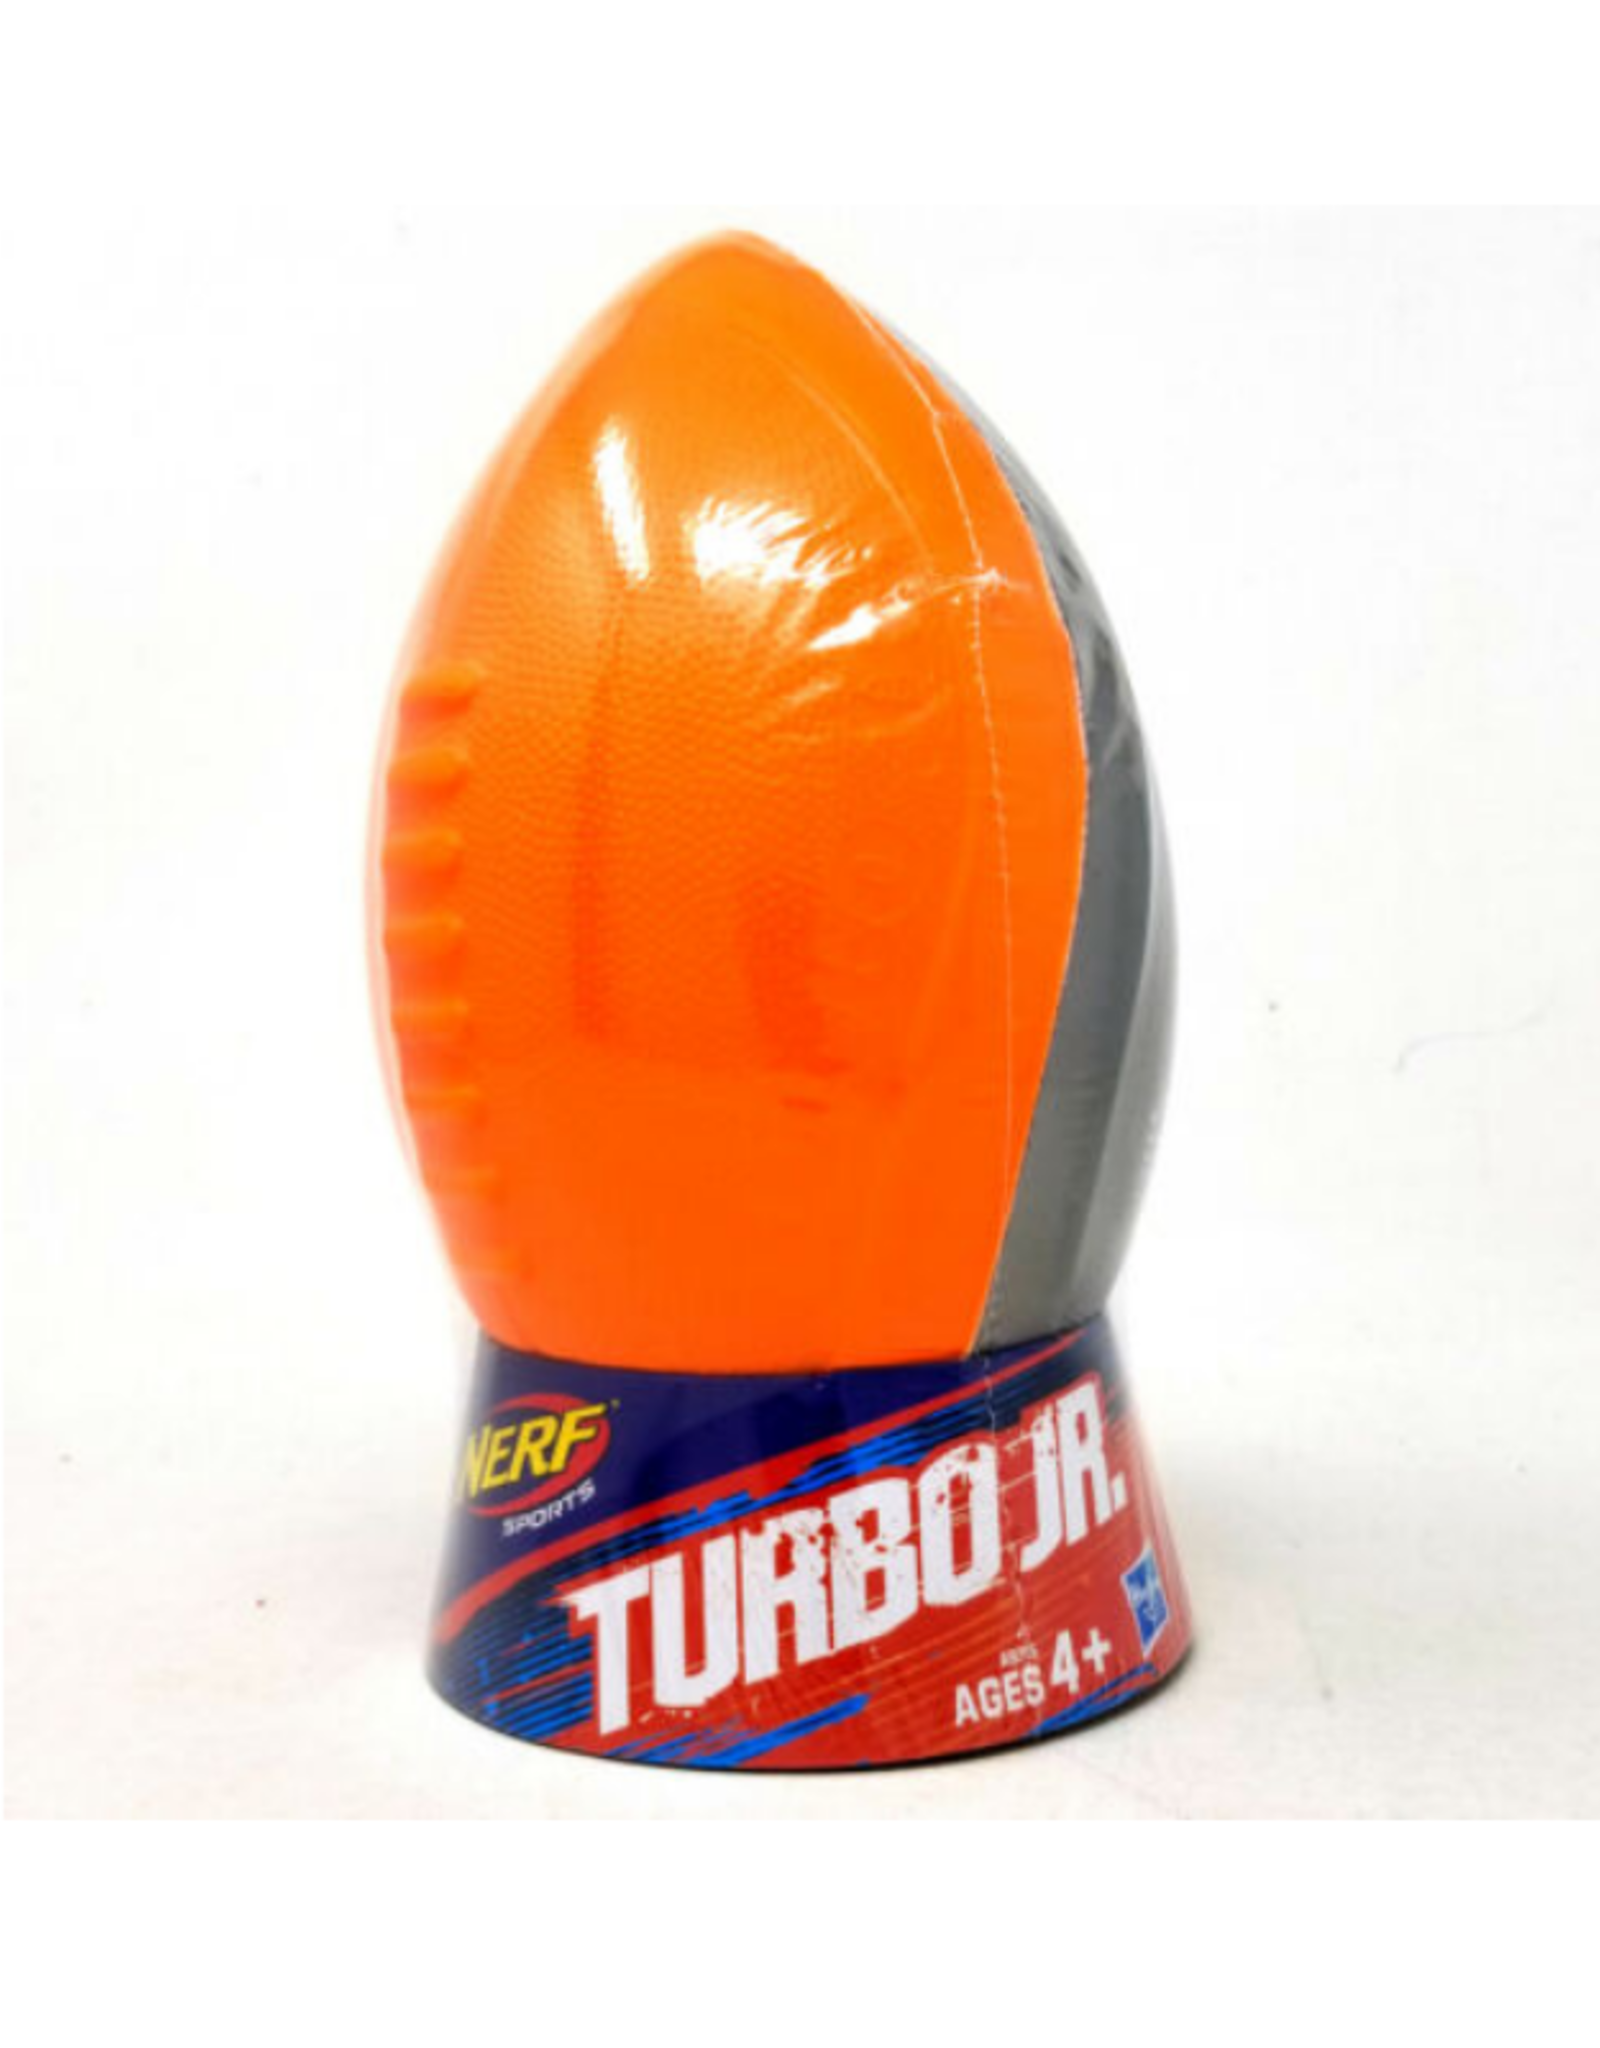 Nerf Sports: Turbo Jr. Football